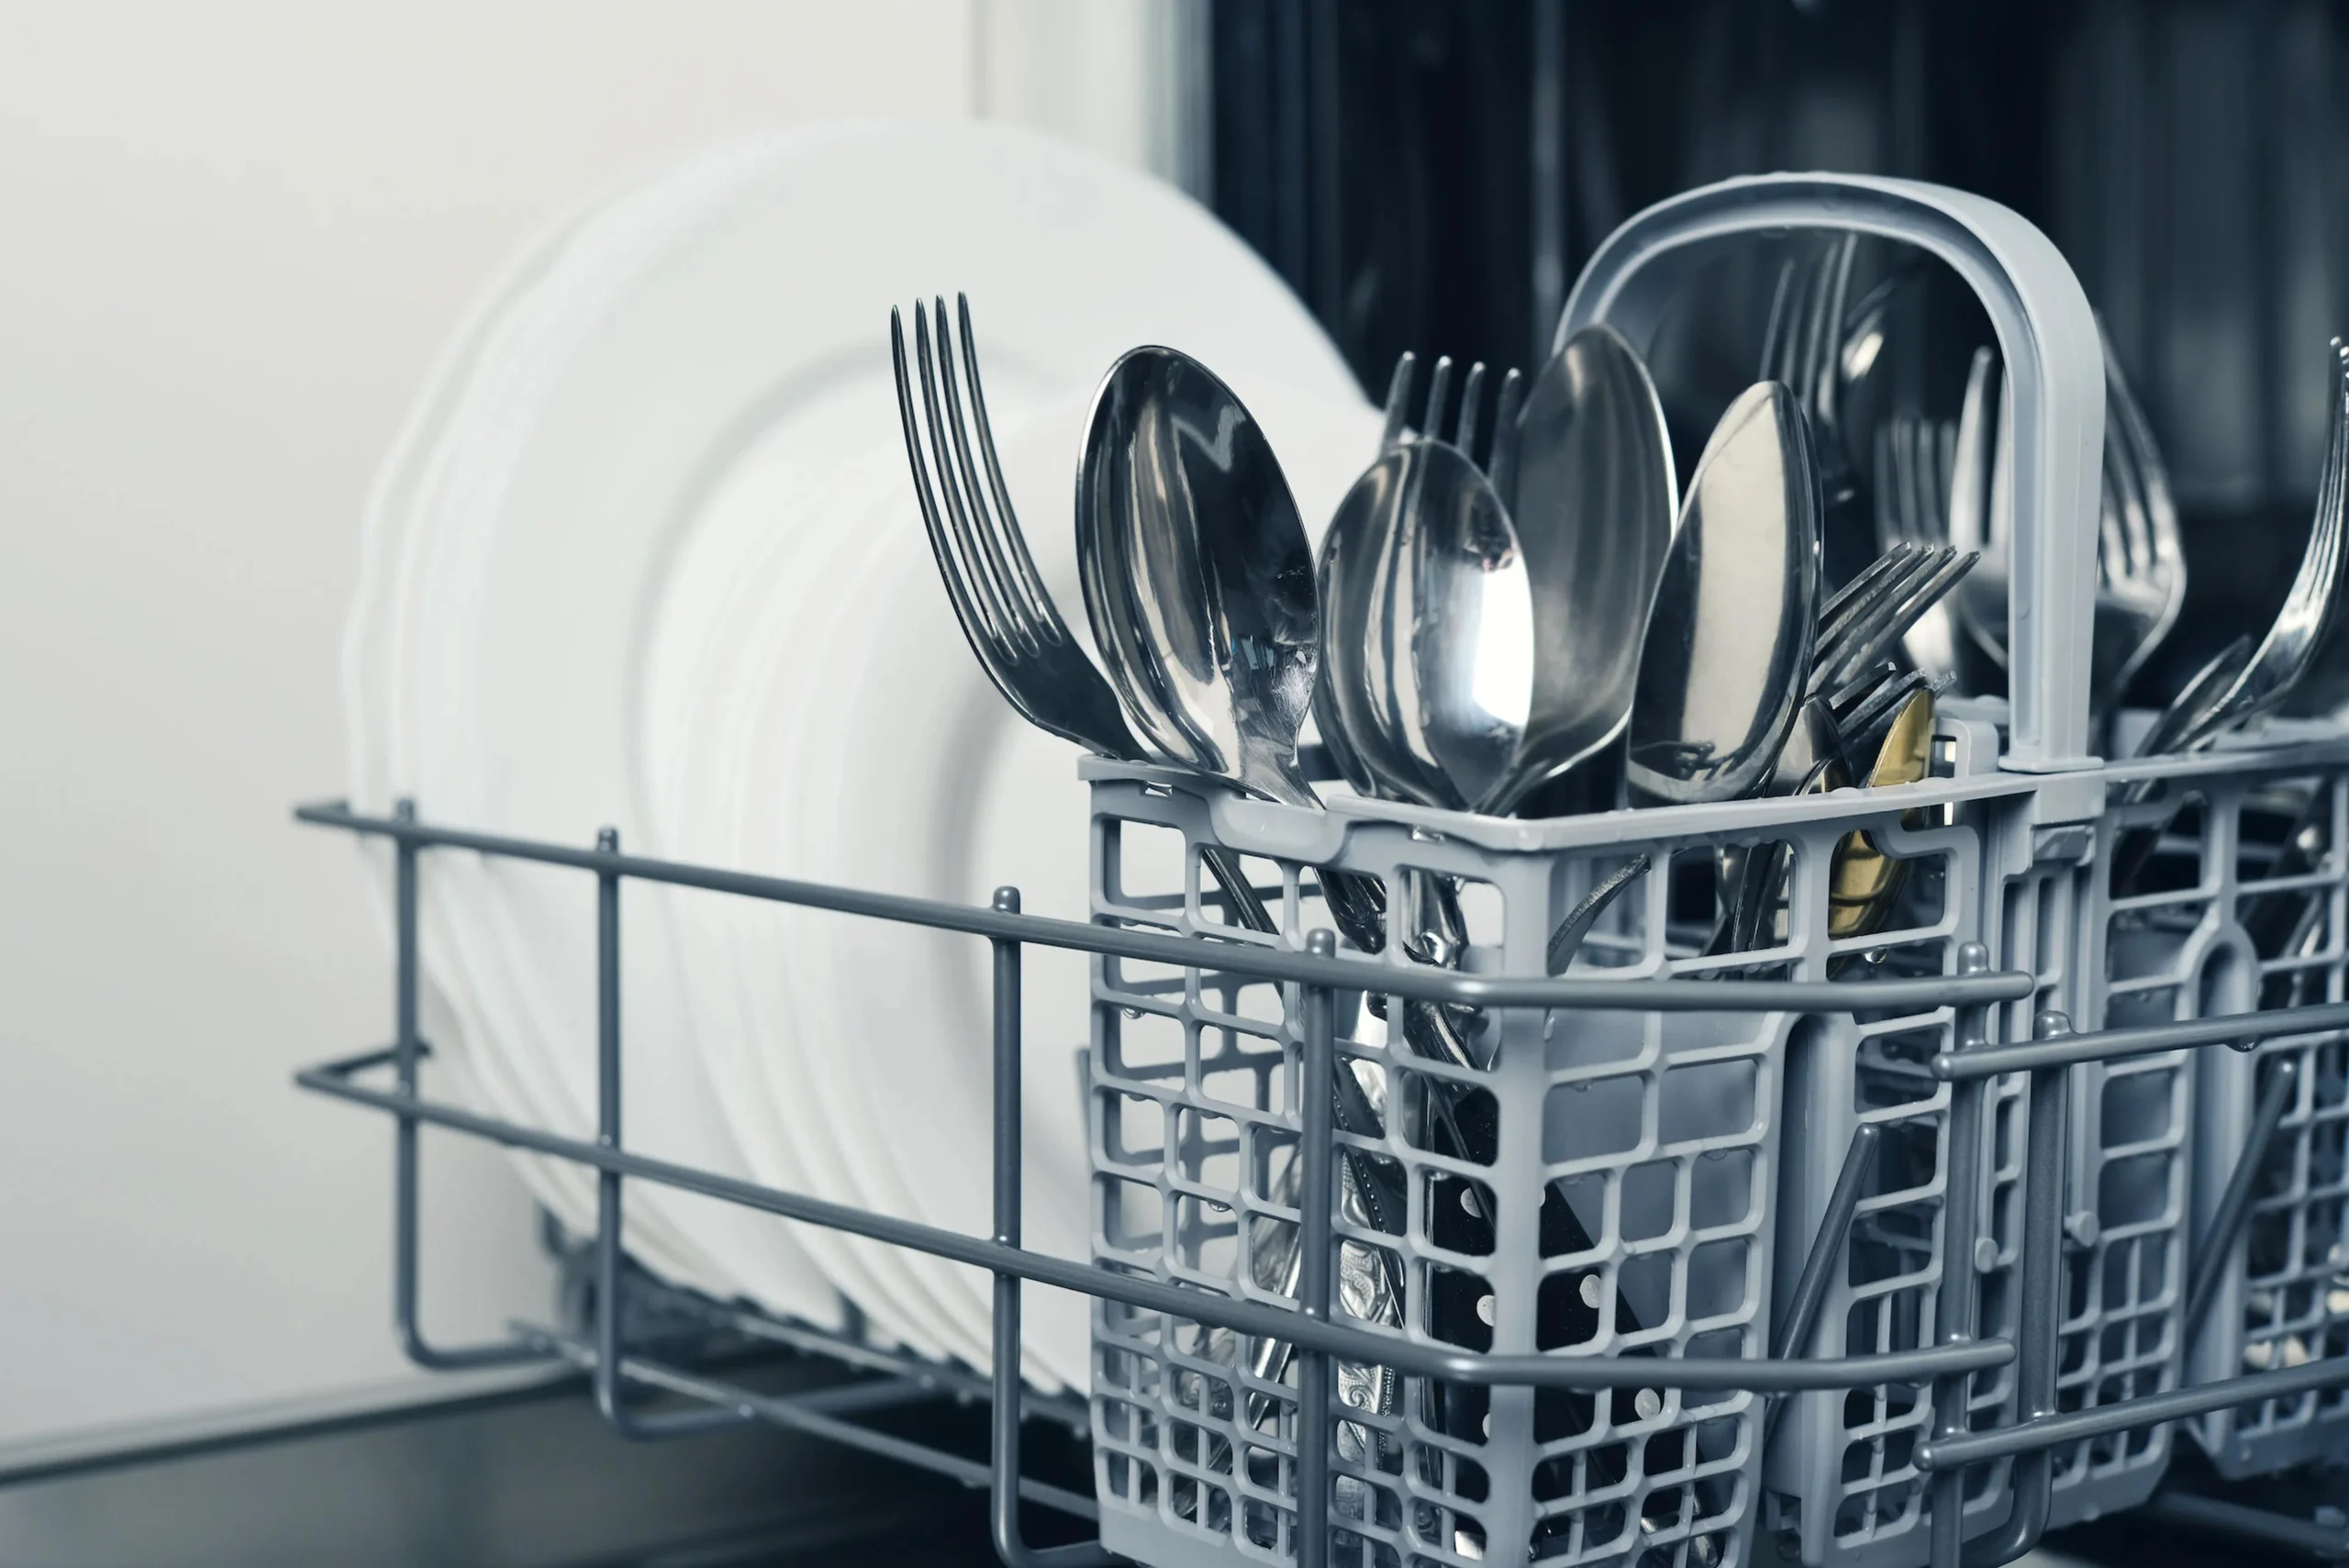 como se ponen los cubiertos en el lavavajillas - Cómo se deben poner los tenedores en el lavavajillas